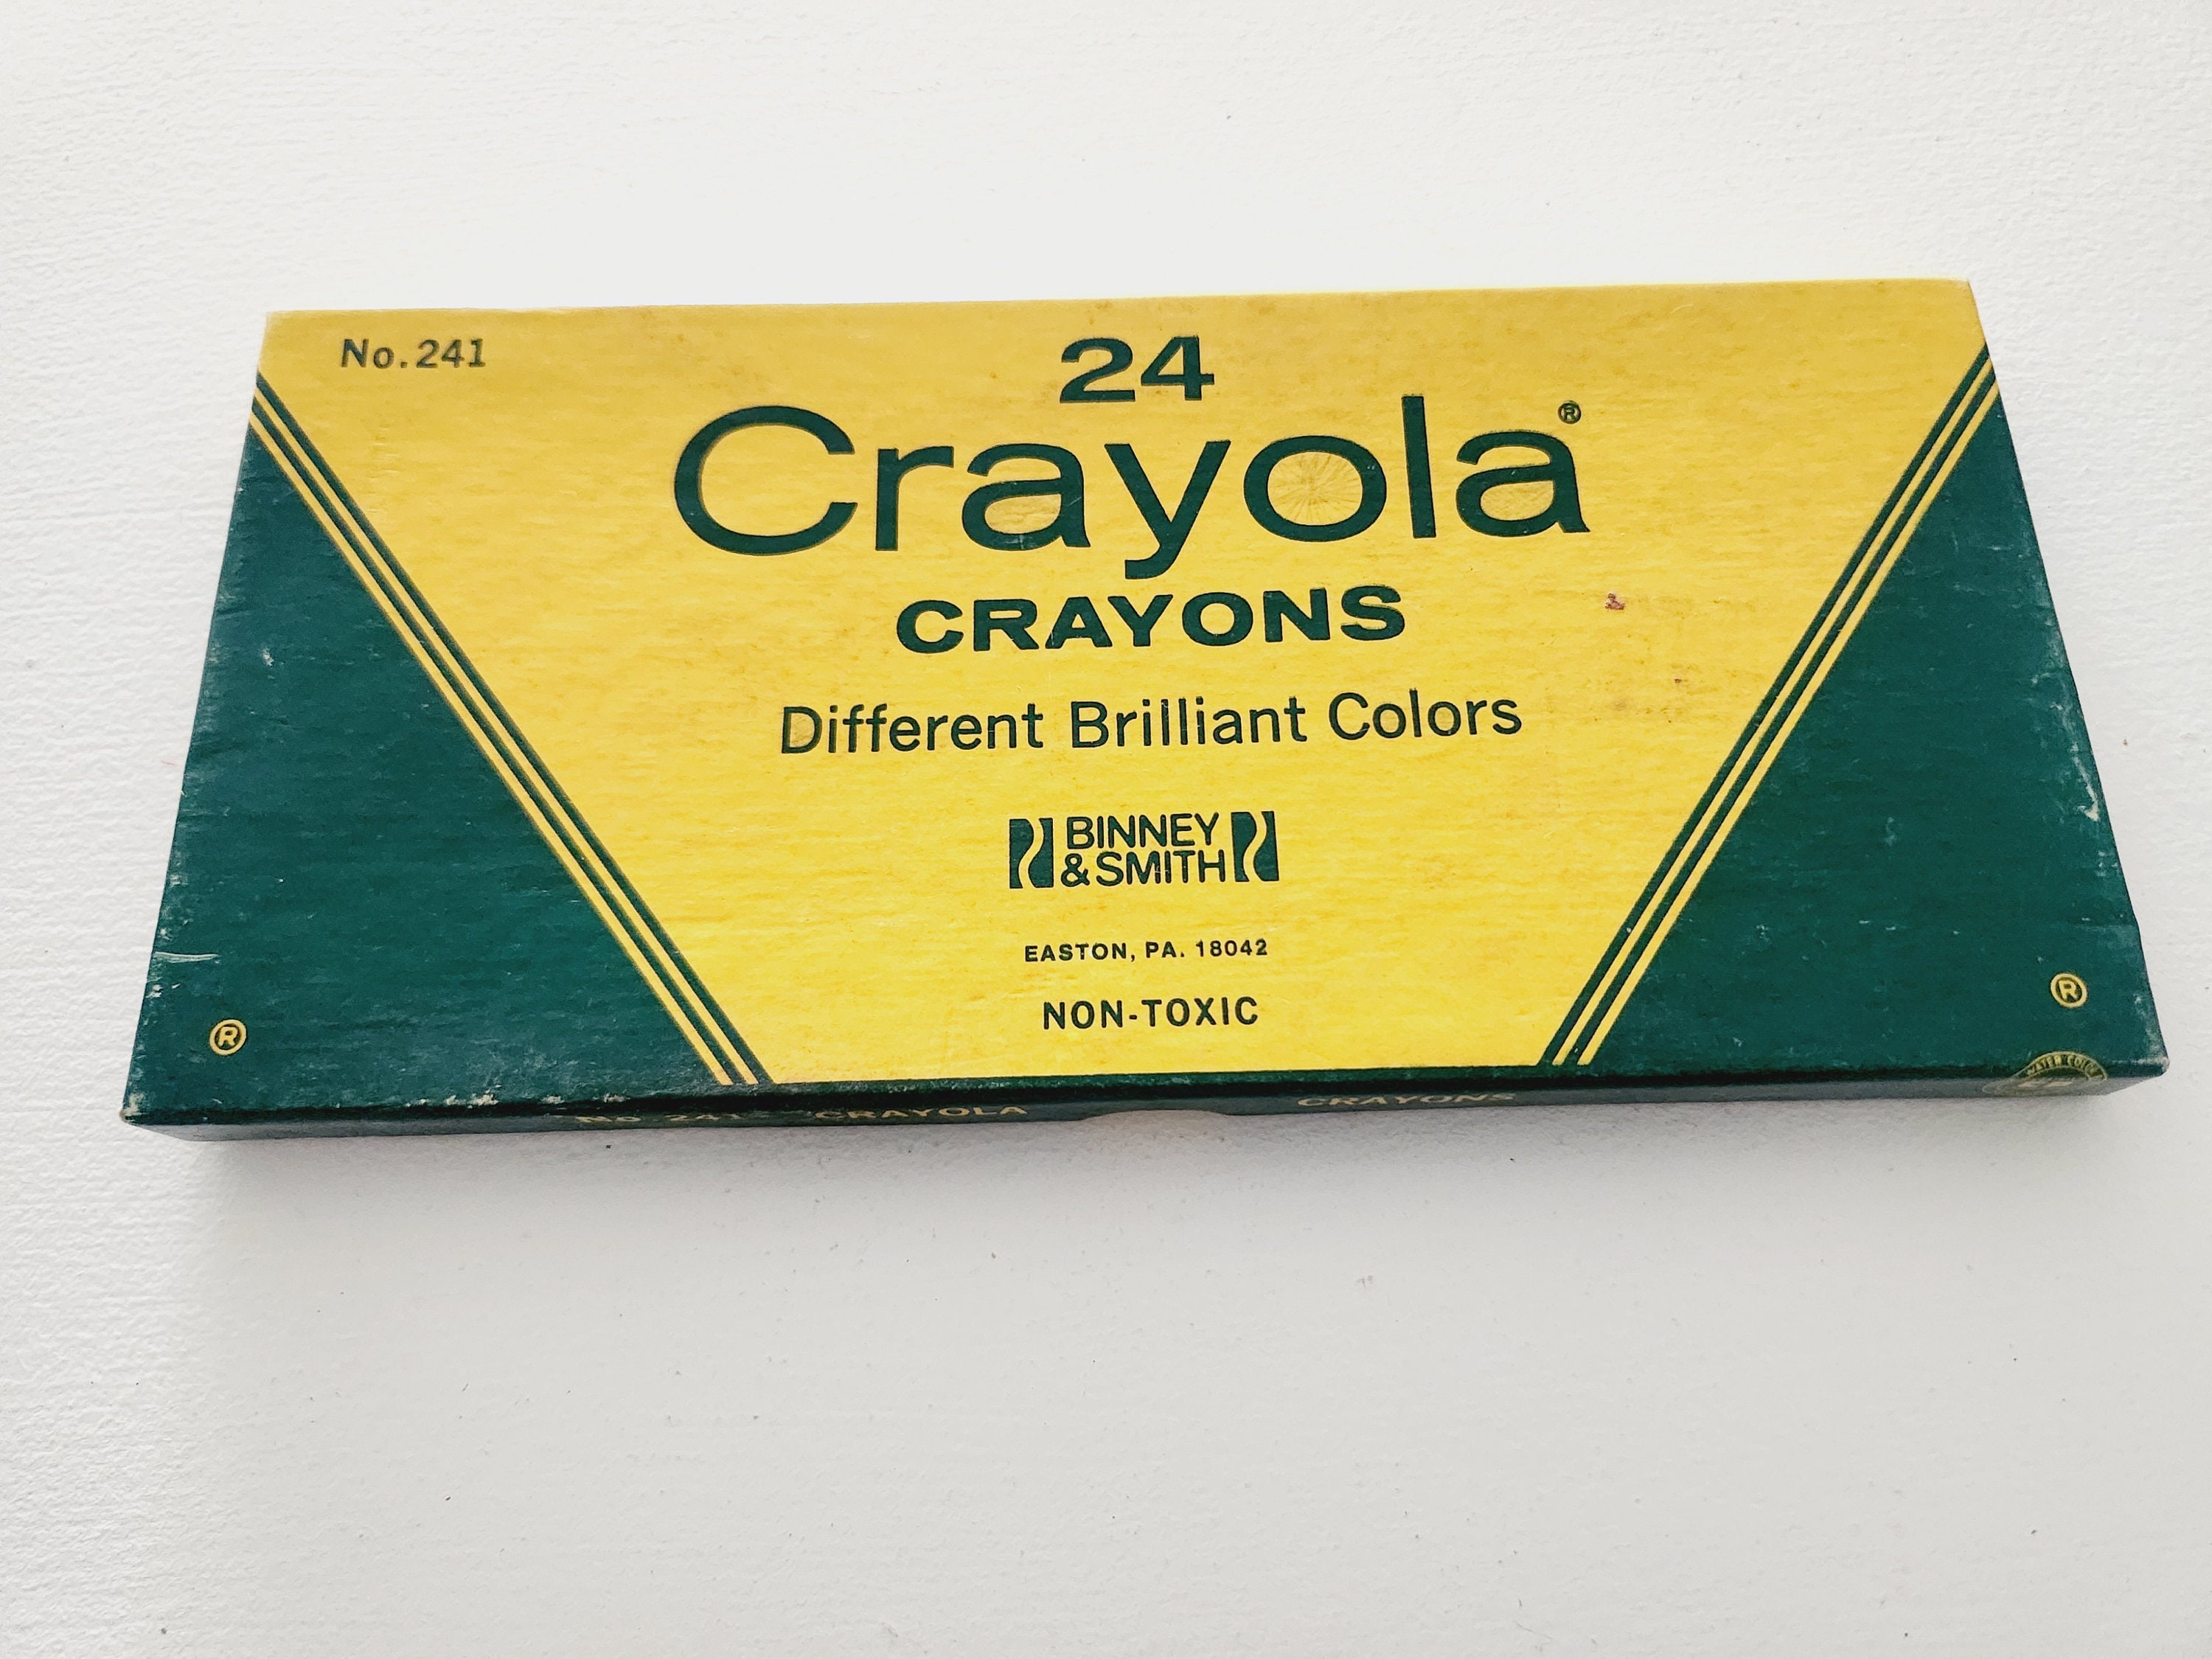 Crayola Crayons - 48 crayons